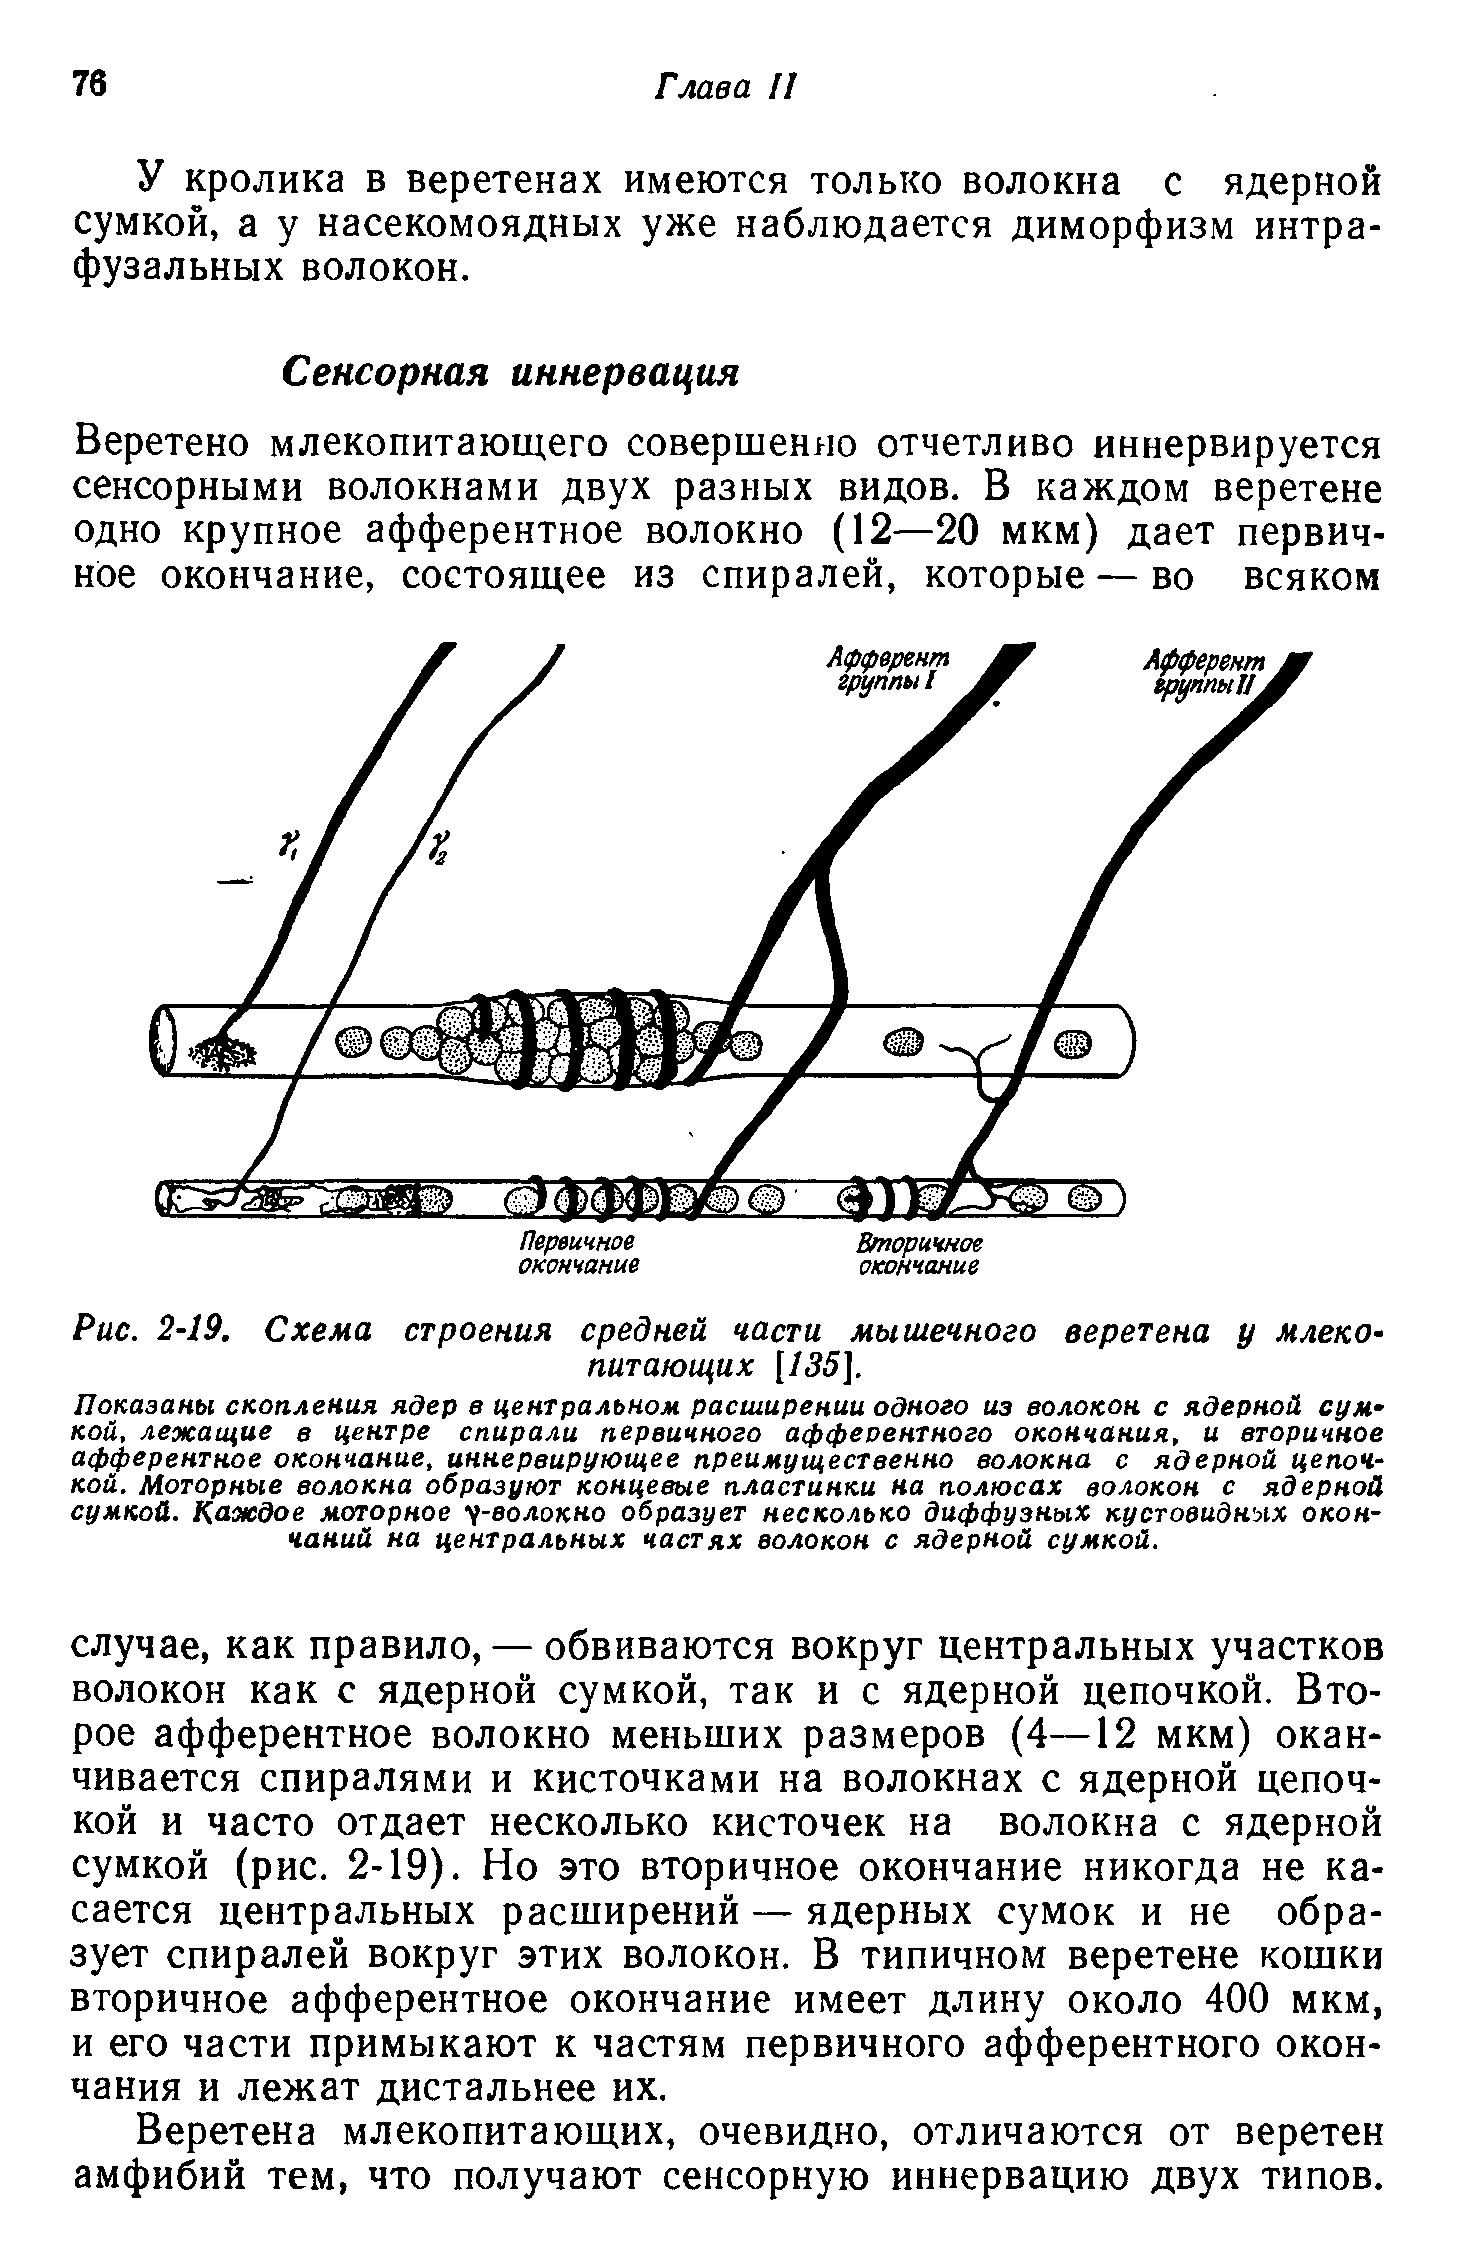 Рис. 2-19. Схема строения средней части мышечного веретена у млекопитающих [/35].